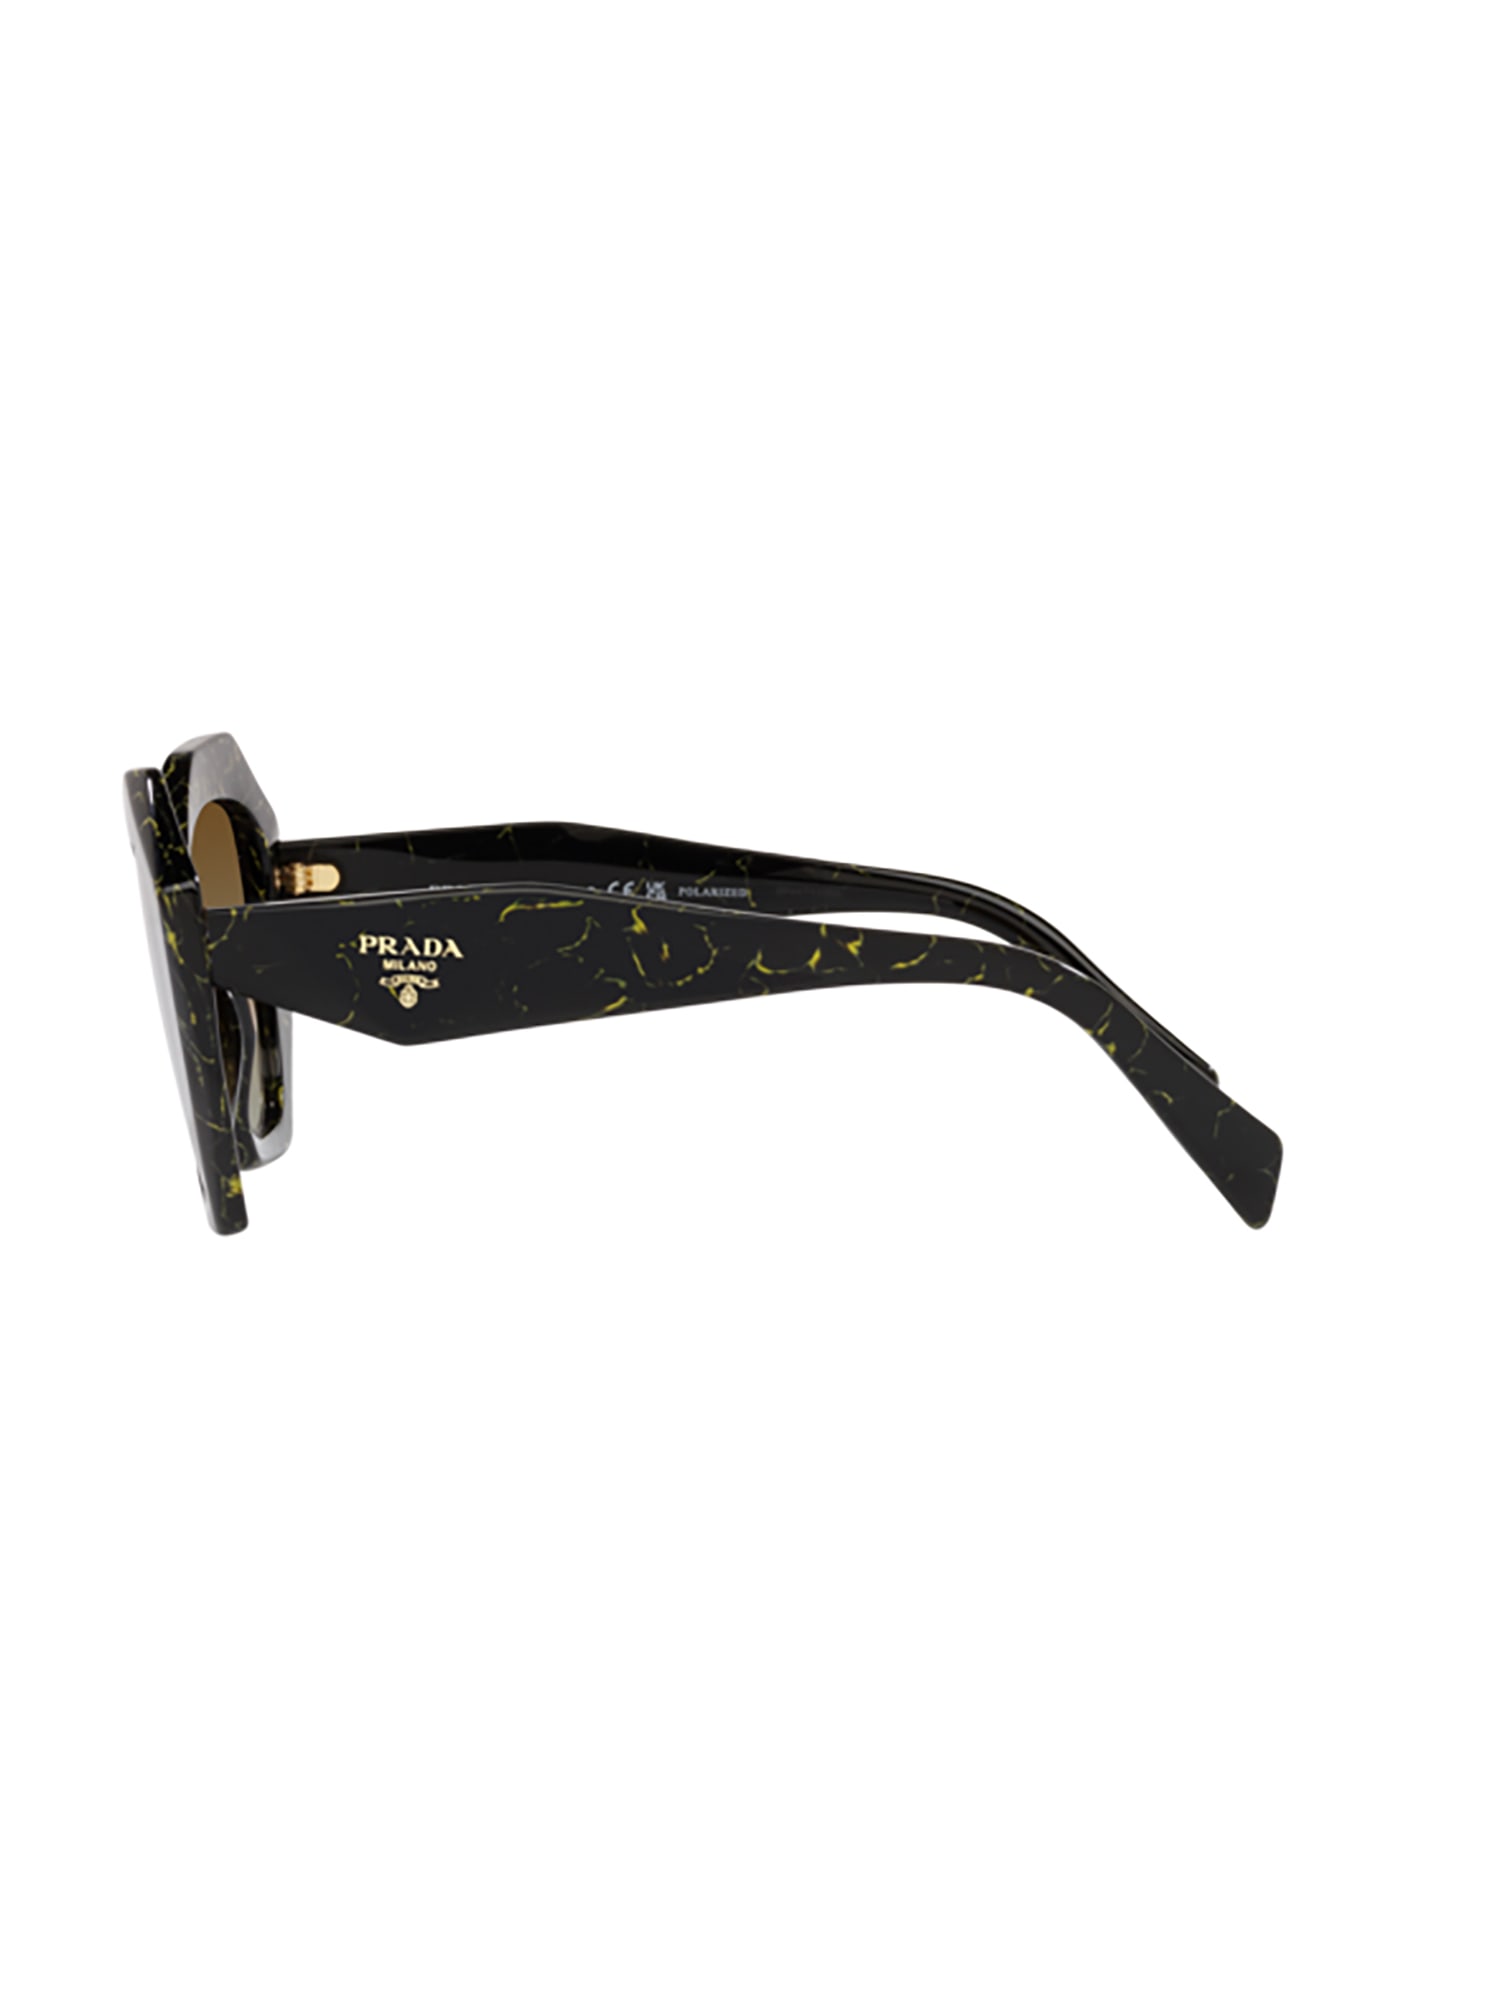 Shop Prada 16ws Sole Sunglasses